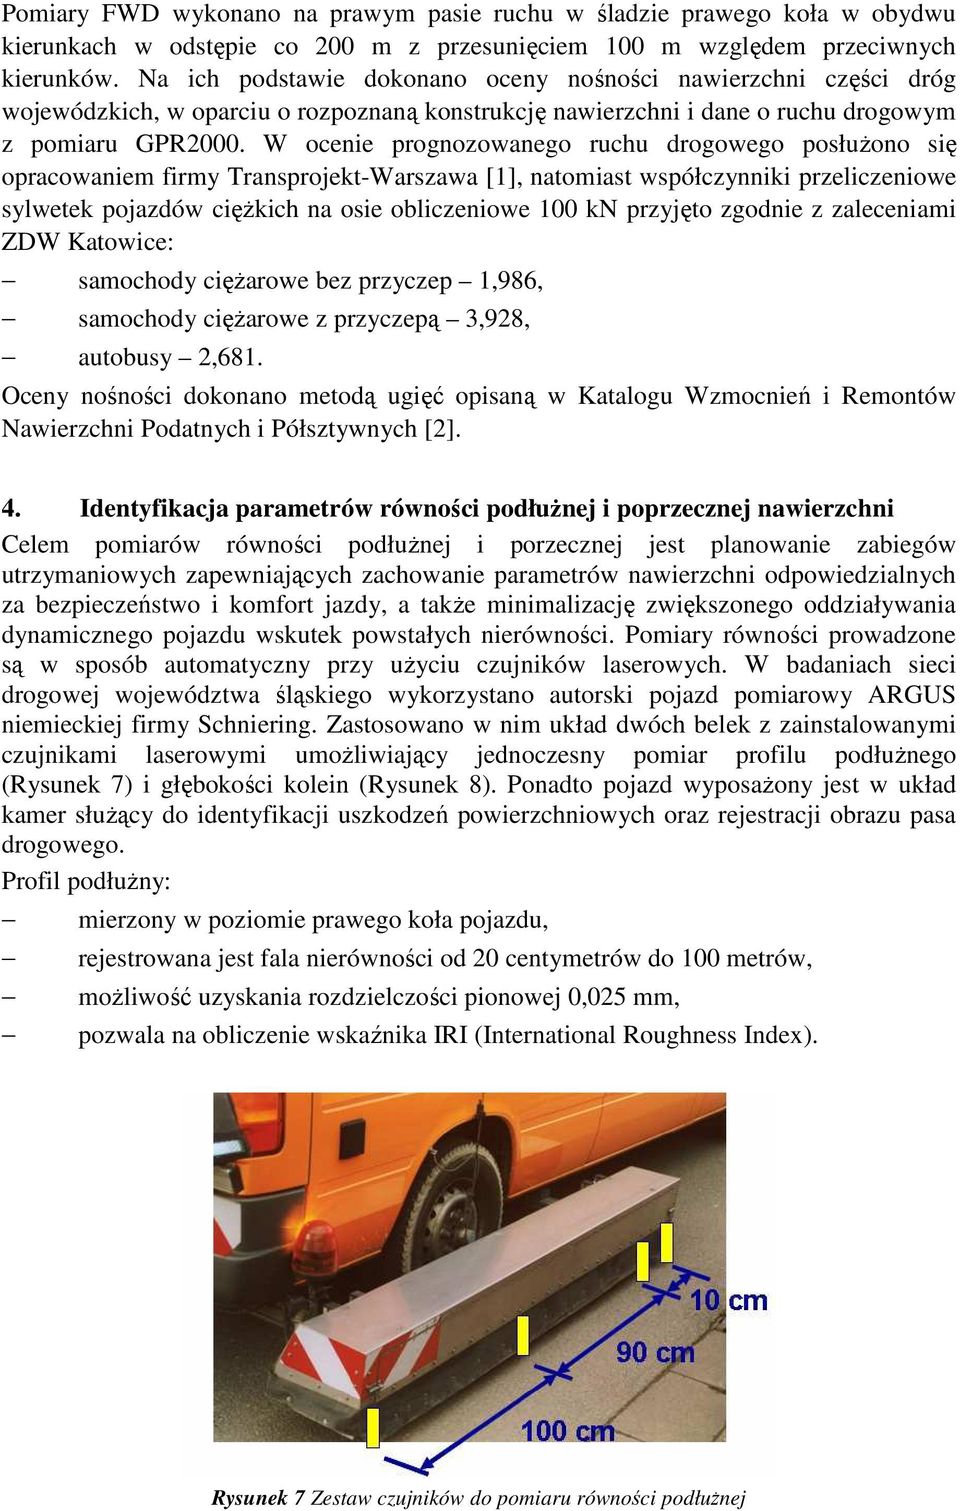 W ocenie prognozowanego ruchu drogowego posłuŝono się opracowaniem firmy Transprojekt-Warszawa [1], natomiast współczynniki przeliczeniowe sylwetek pojazdów cięŝkich na osie obliczeniowe 100 kn